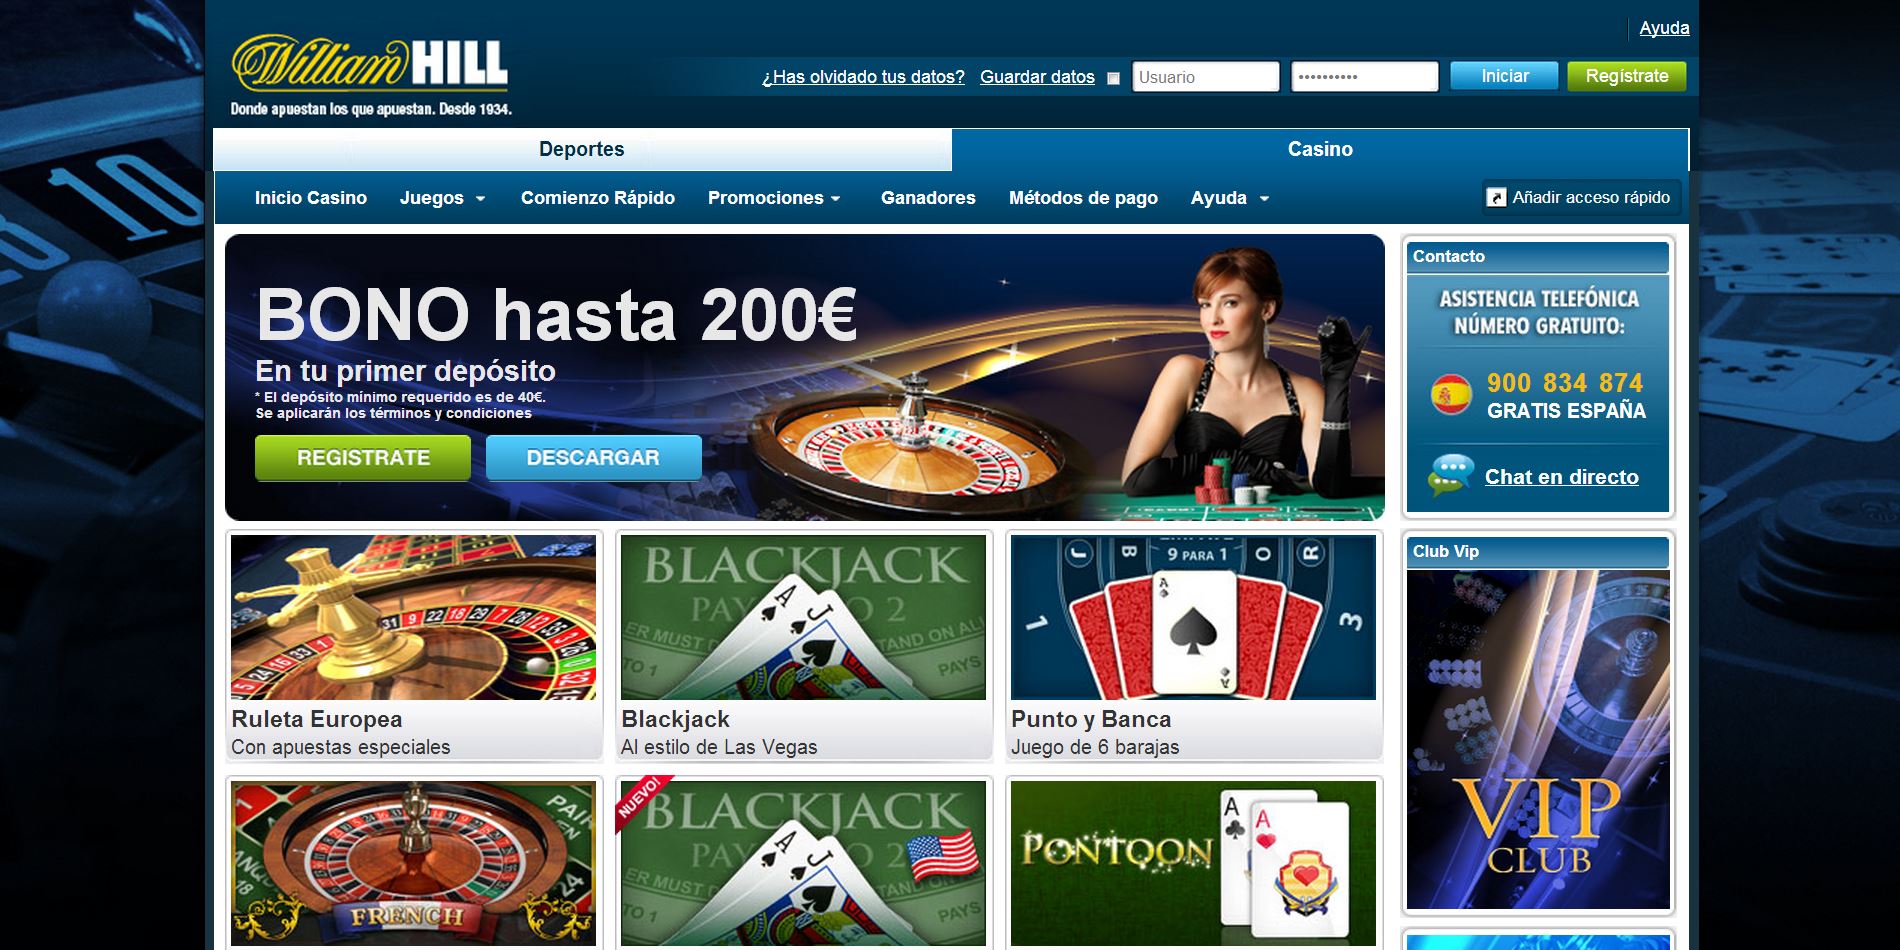 Blackjack trucos bonos gratis sin deposito casino Colombia 310947